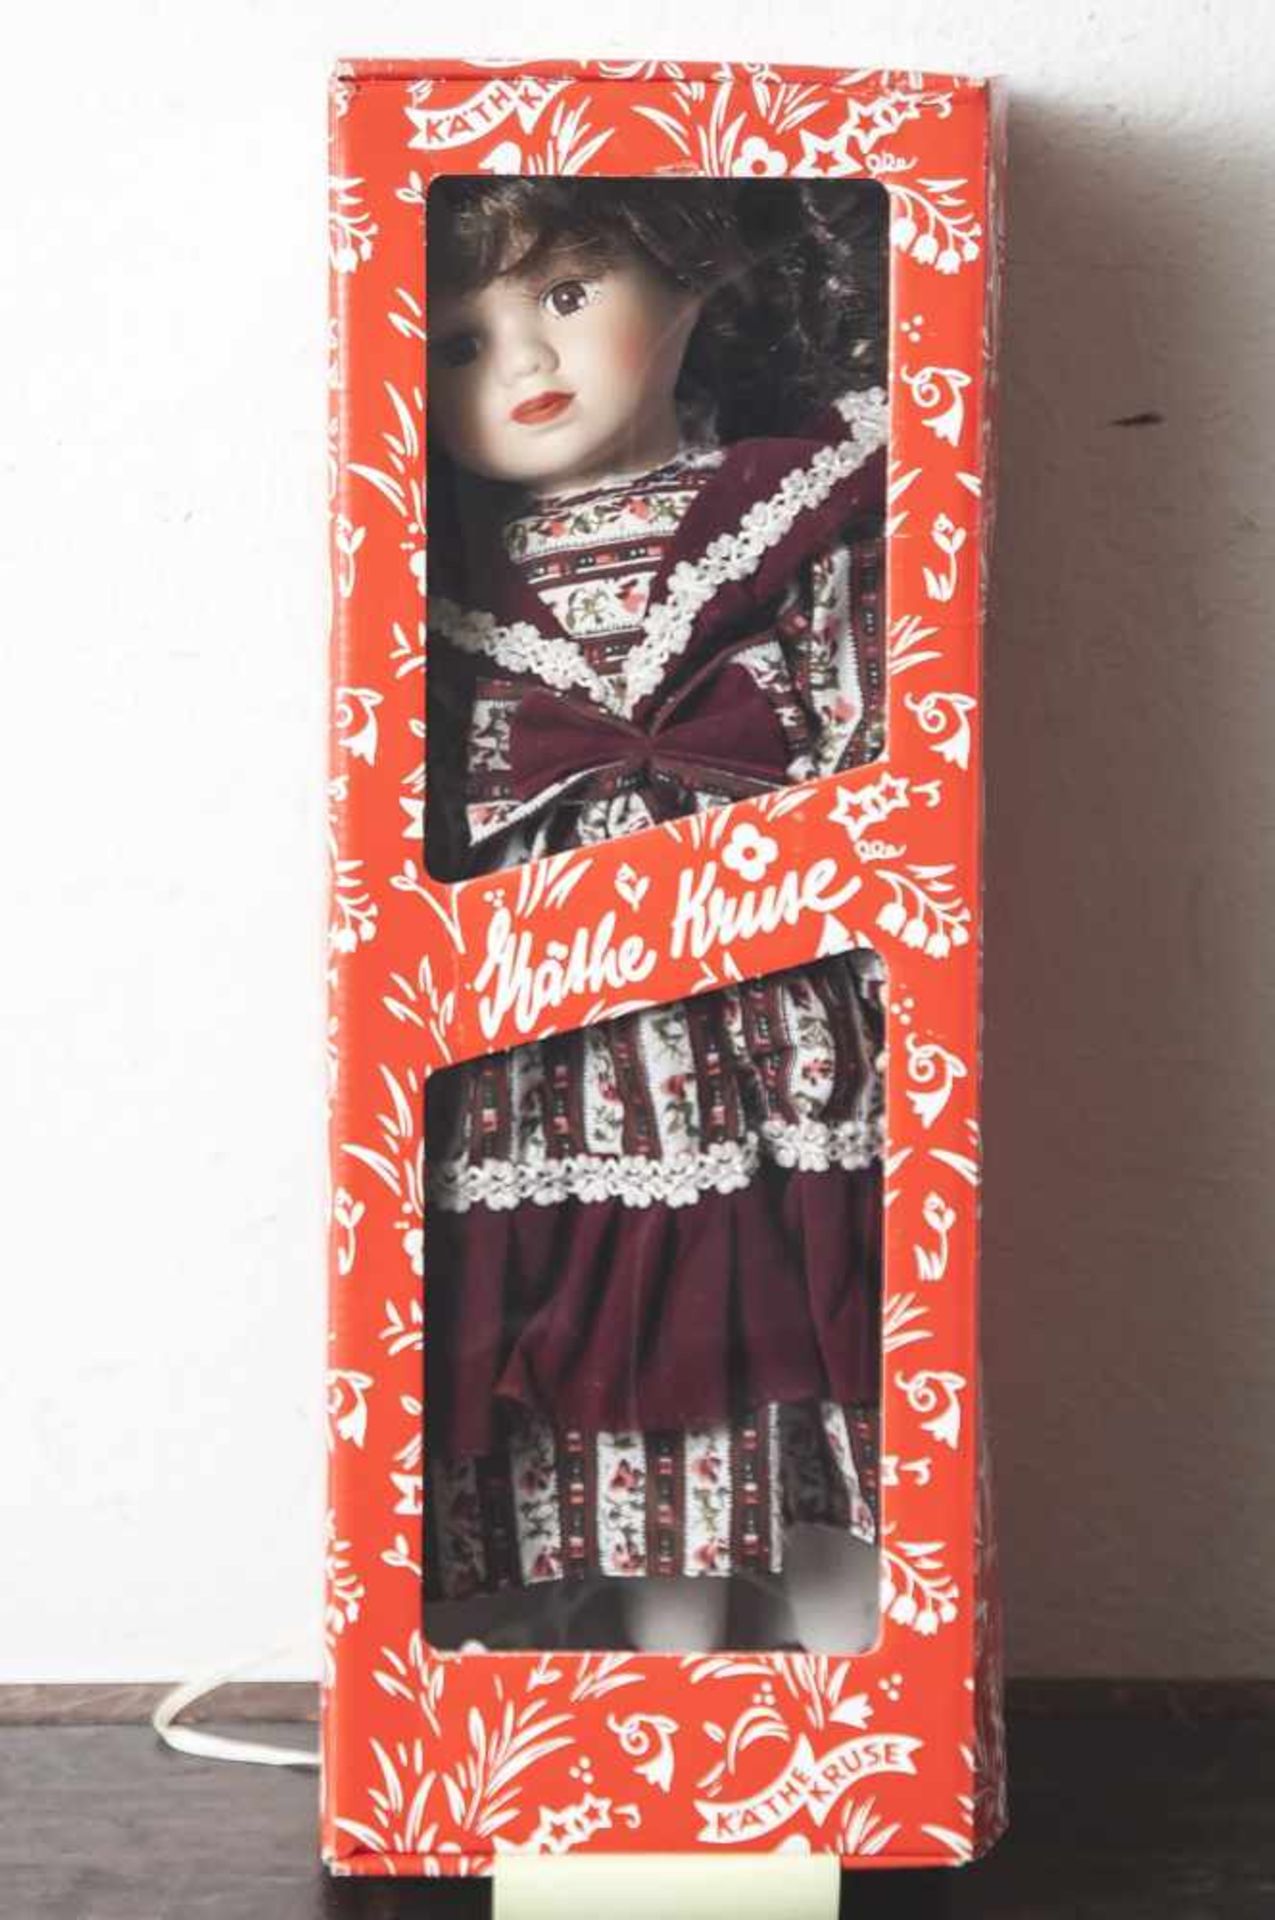 Porzellankopf-Puppe, Mädchen mit langen hellbraunen Haaren und braunen Augen, bekleidet mit einem